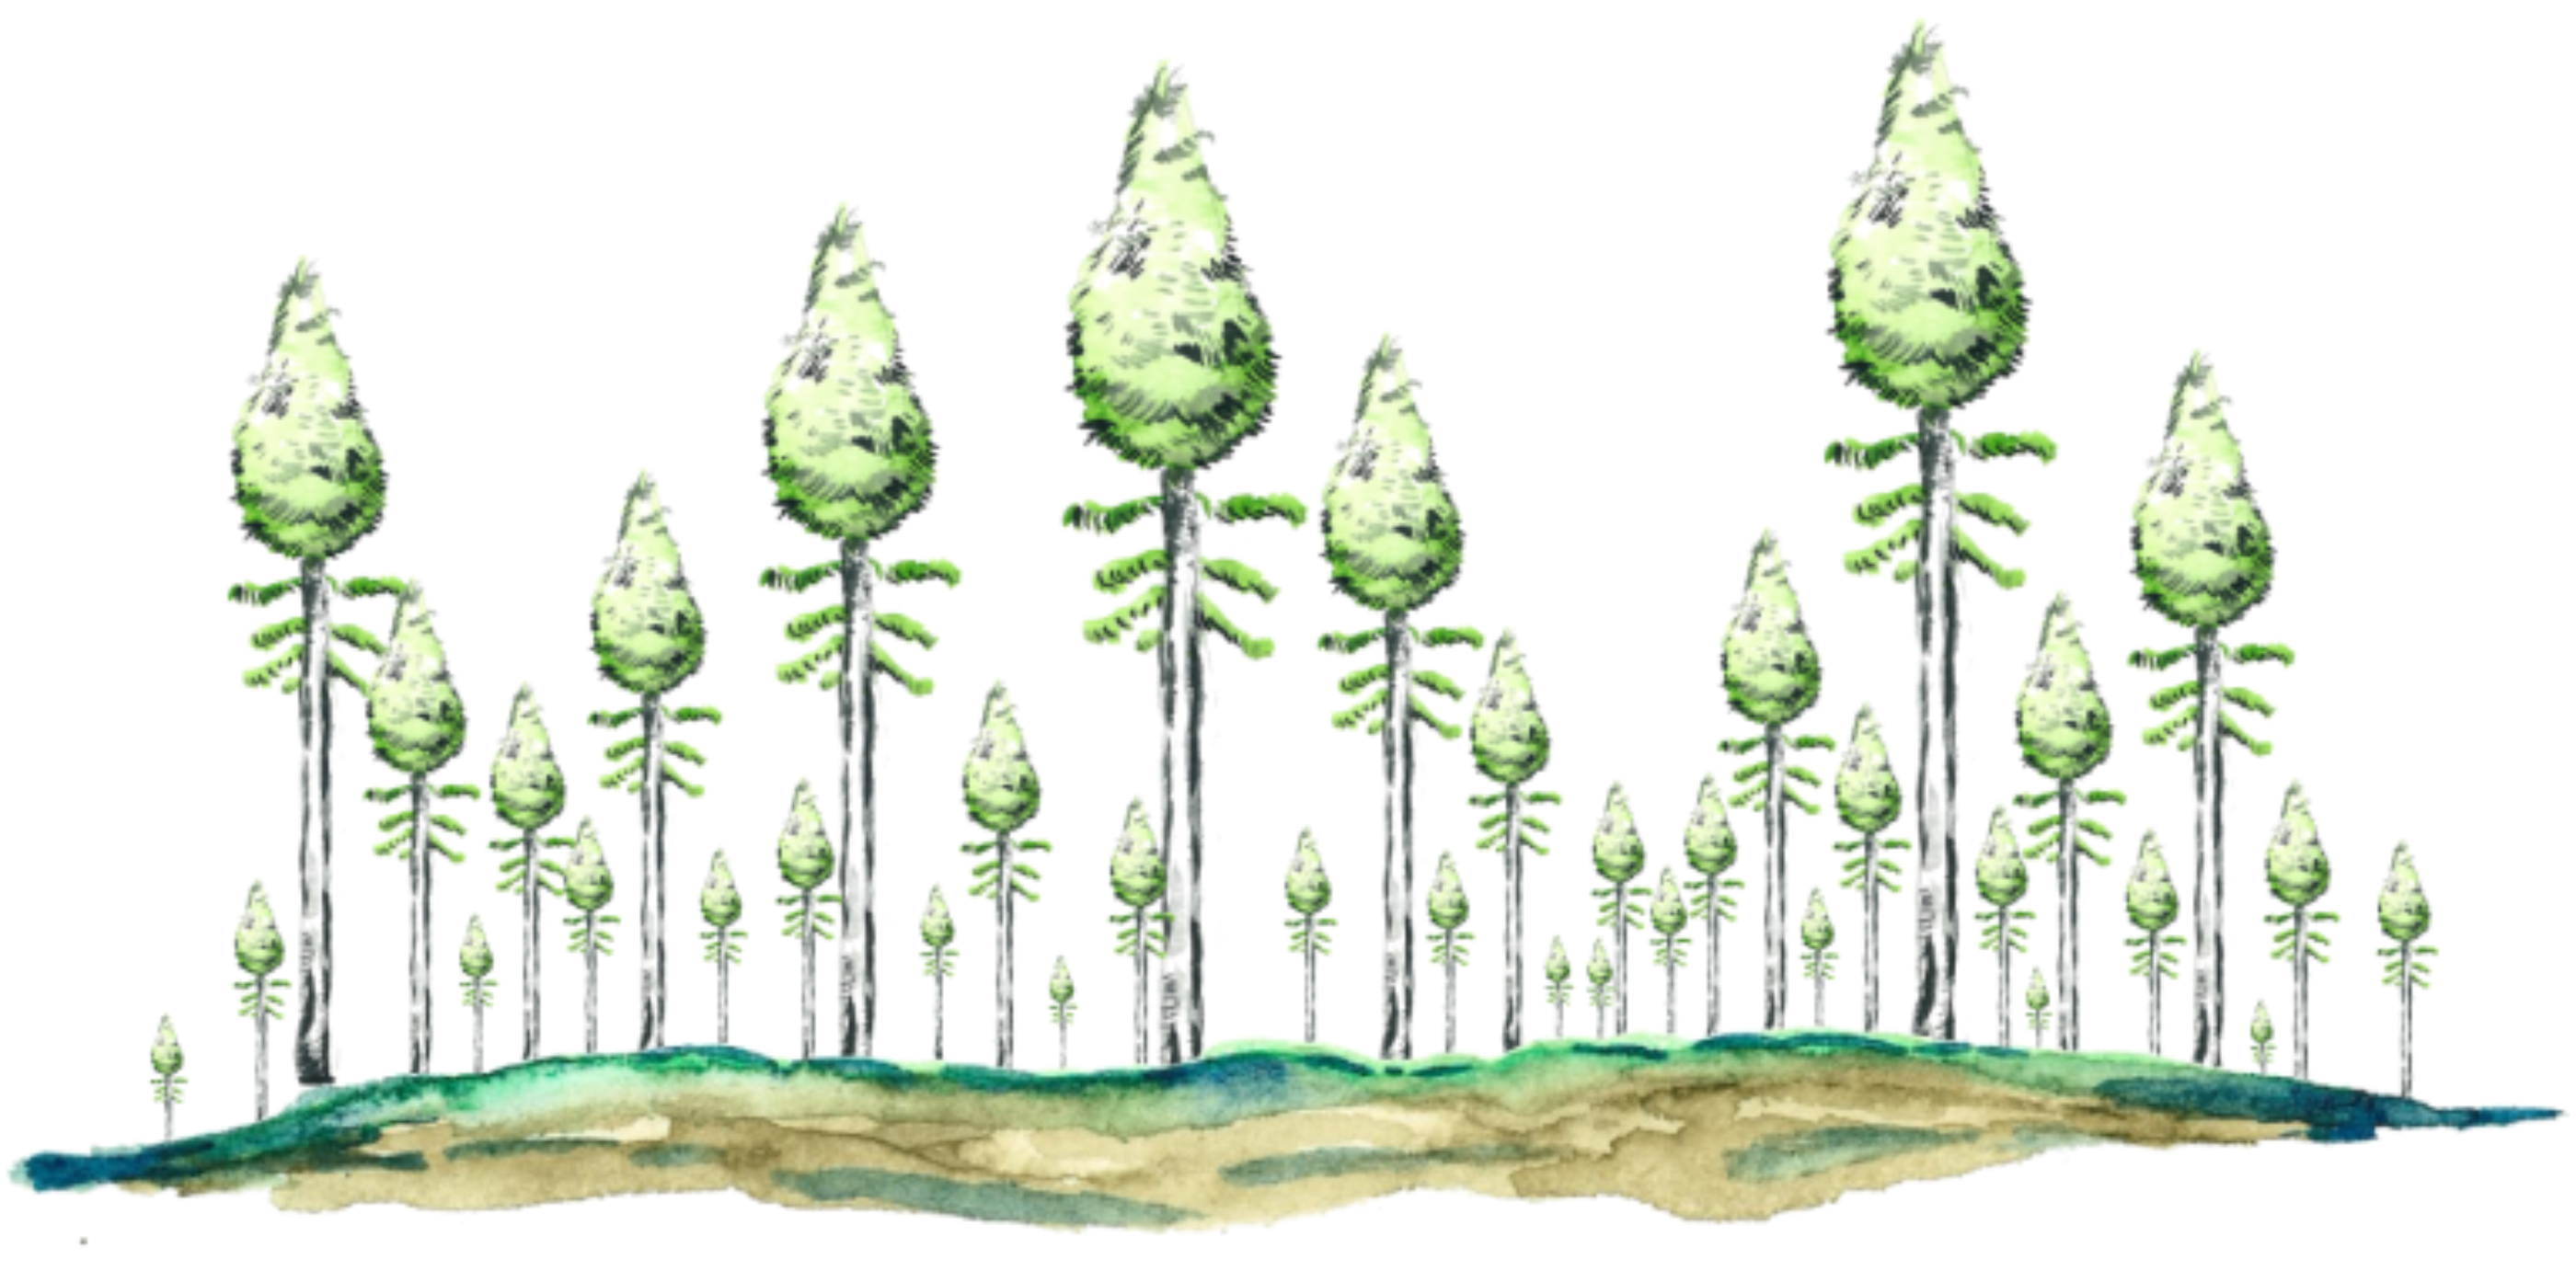 Représentation schématique d’une vieille forêt boréale paludifiée